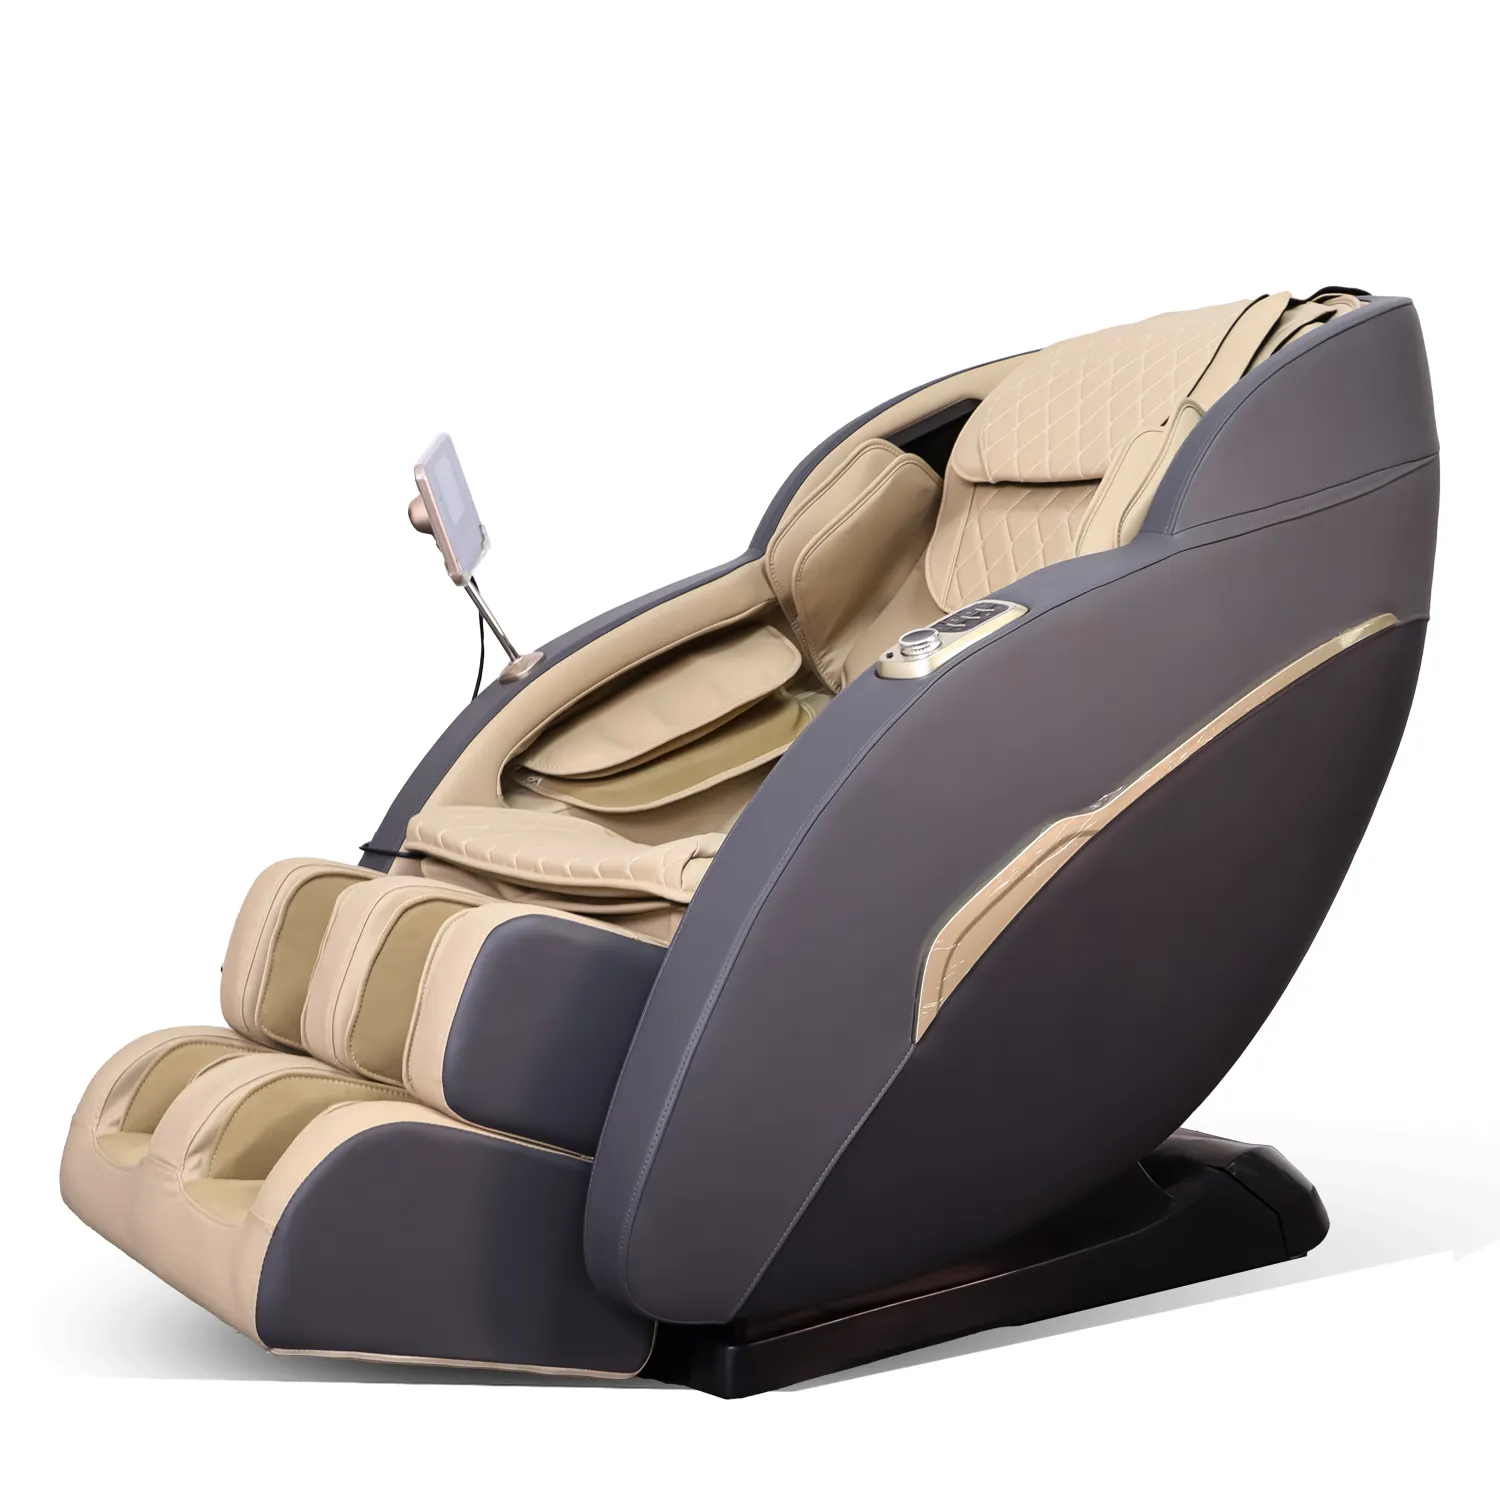 הטוב ביותר כיסא חשמלי עיסוי מלא גוף ו recliner אפס הכבידה בחזרה כיסא עיסוי כיסא לבית או DC-274 במשרד